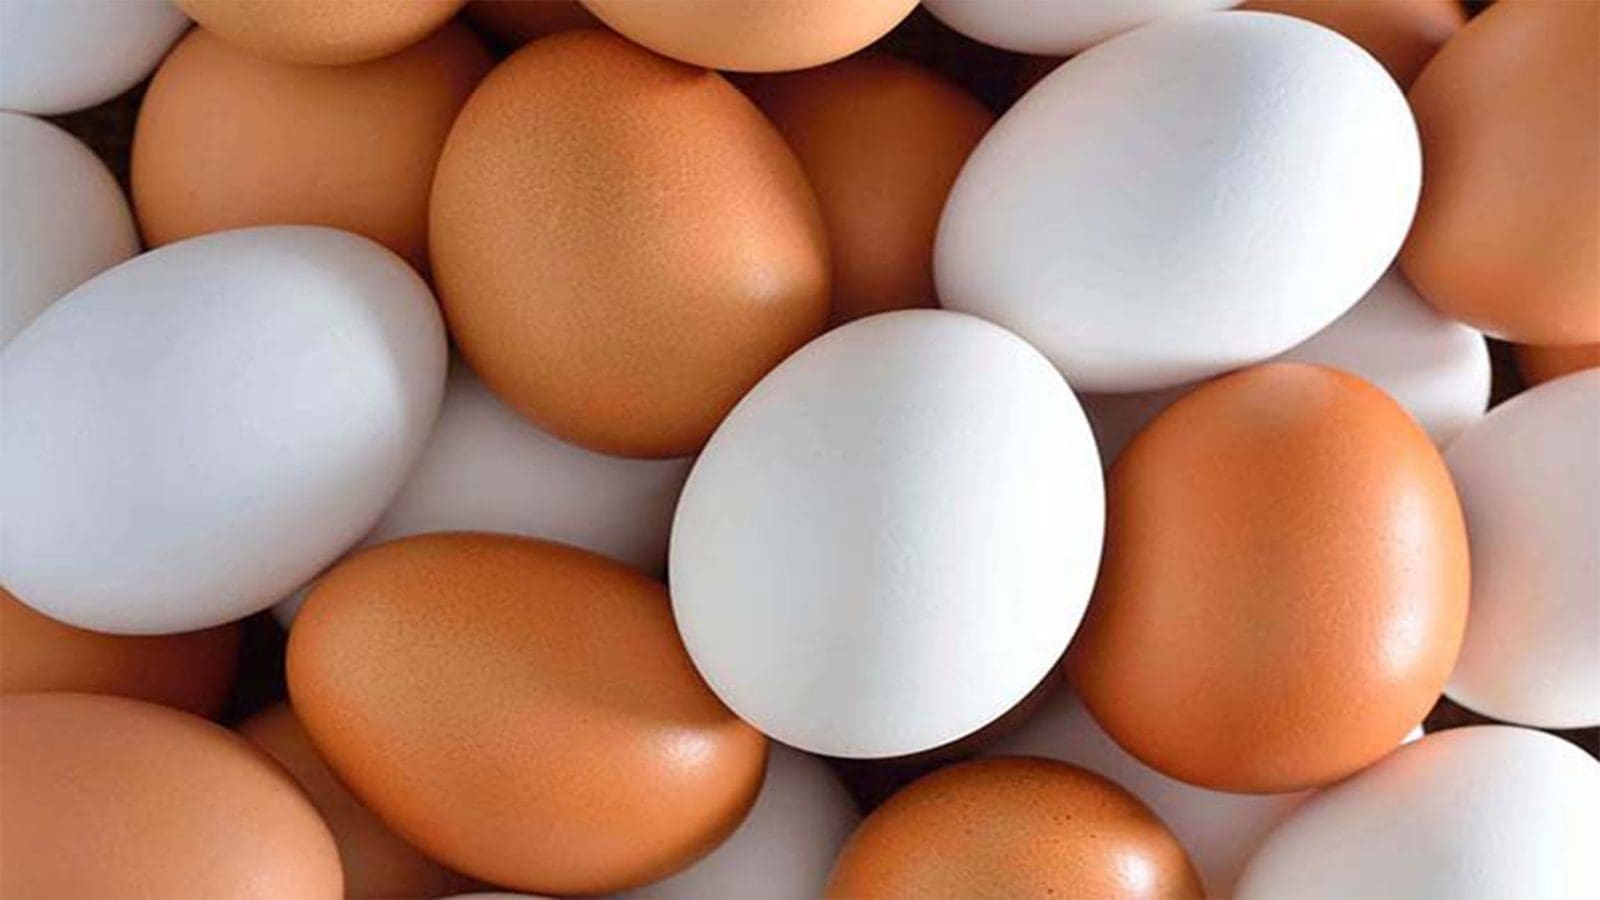 Researchers create technique to quickly detect salmonella in shell eggs